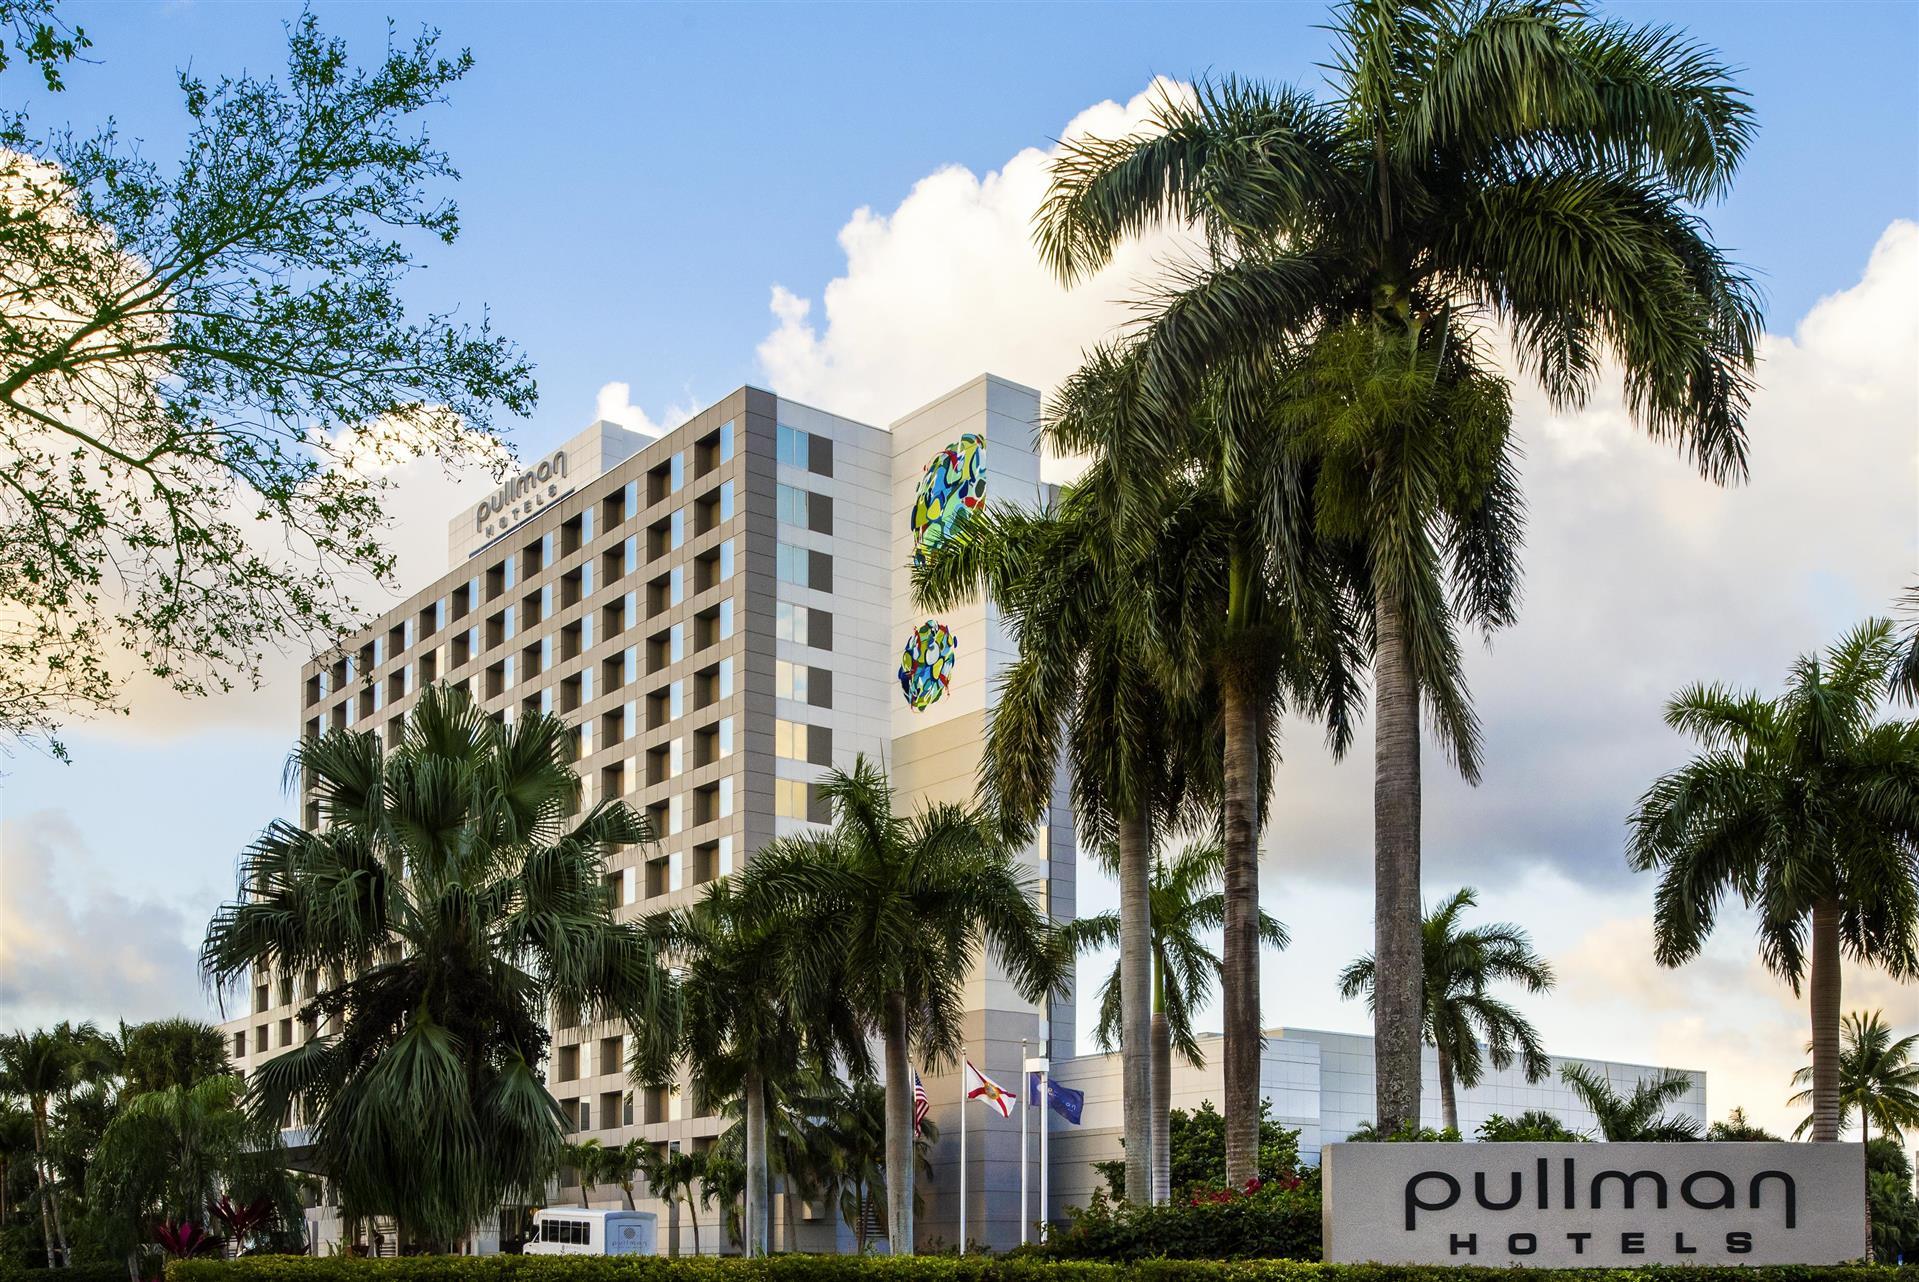 Pullman Miami Airport Hotel in Miami, FL